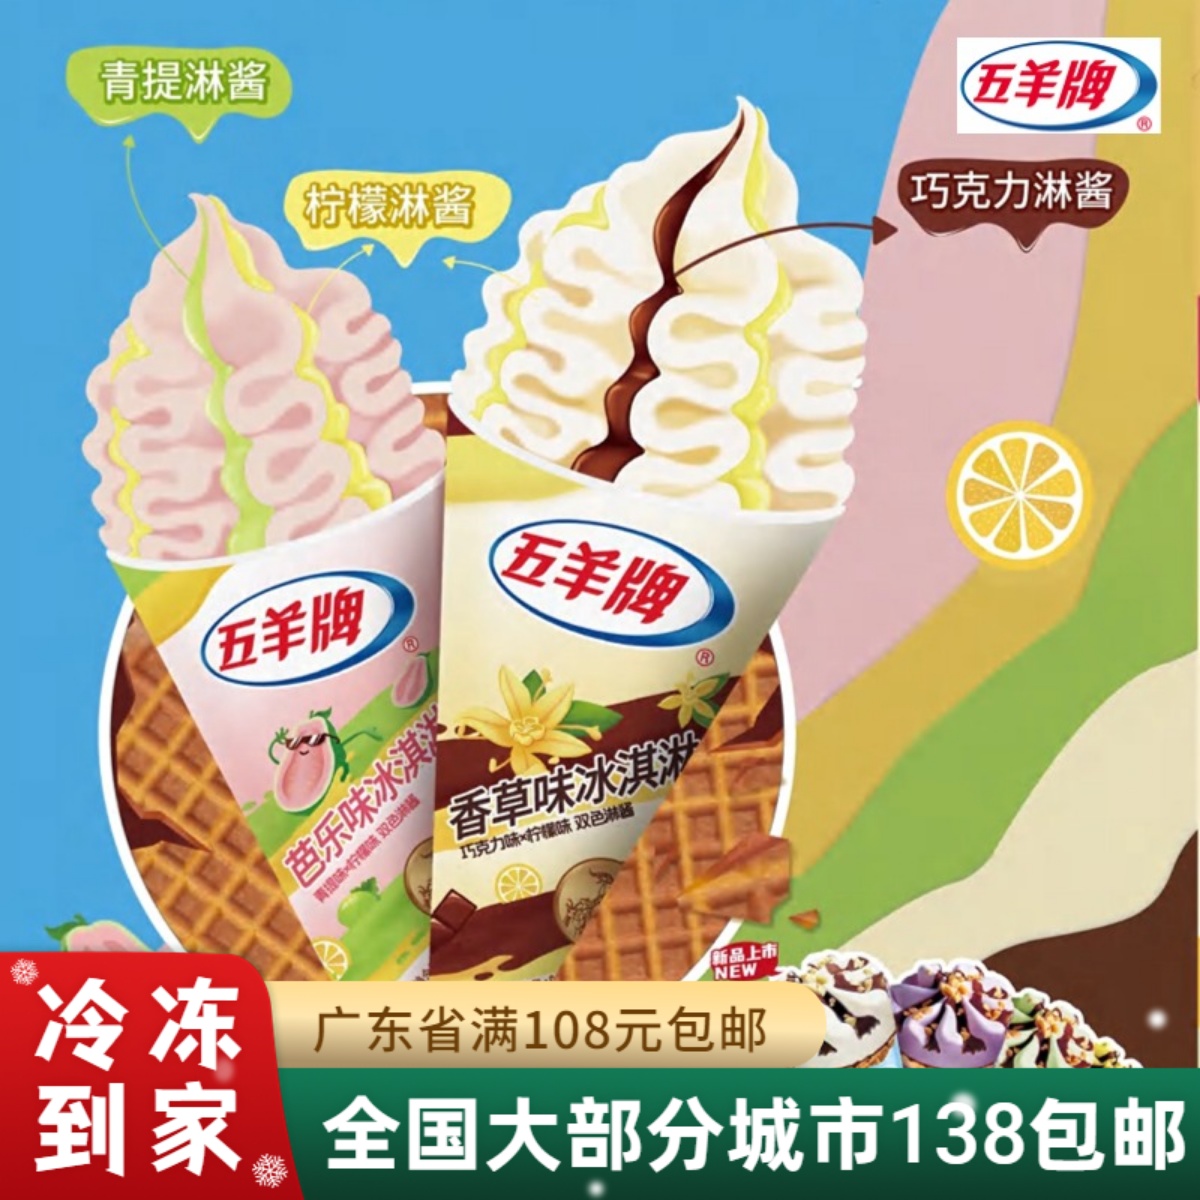 【新品】五羊牌雪糕脆筒拉花冰淇淋粤式甜筒香草芭乐口味85g支